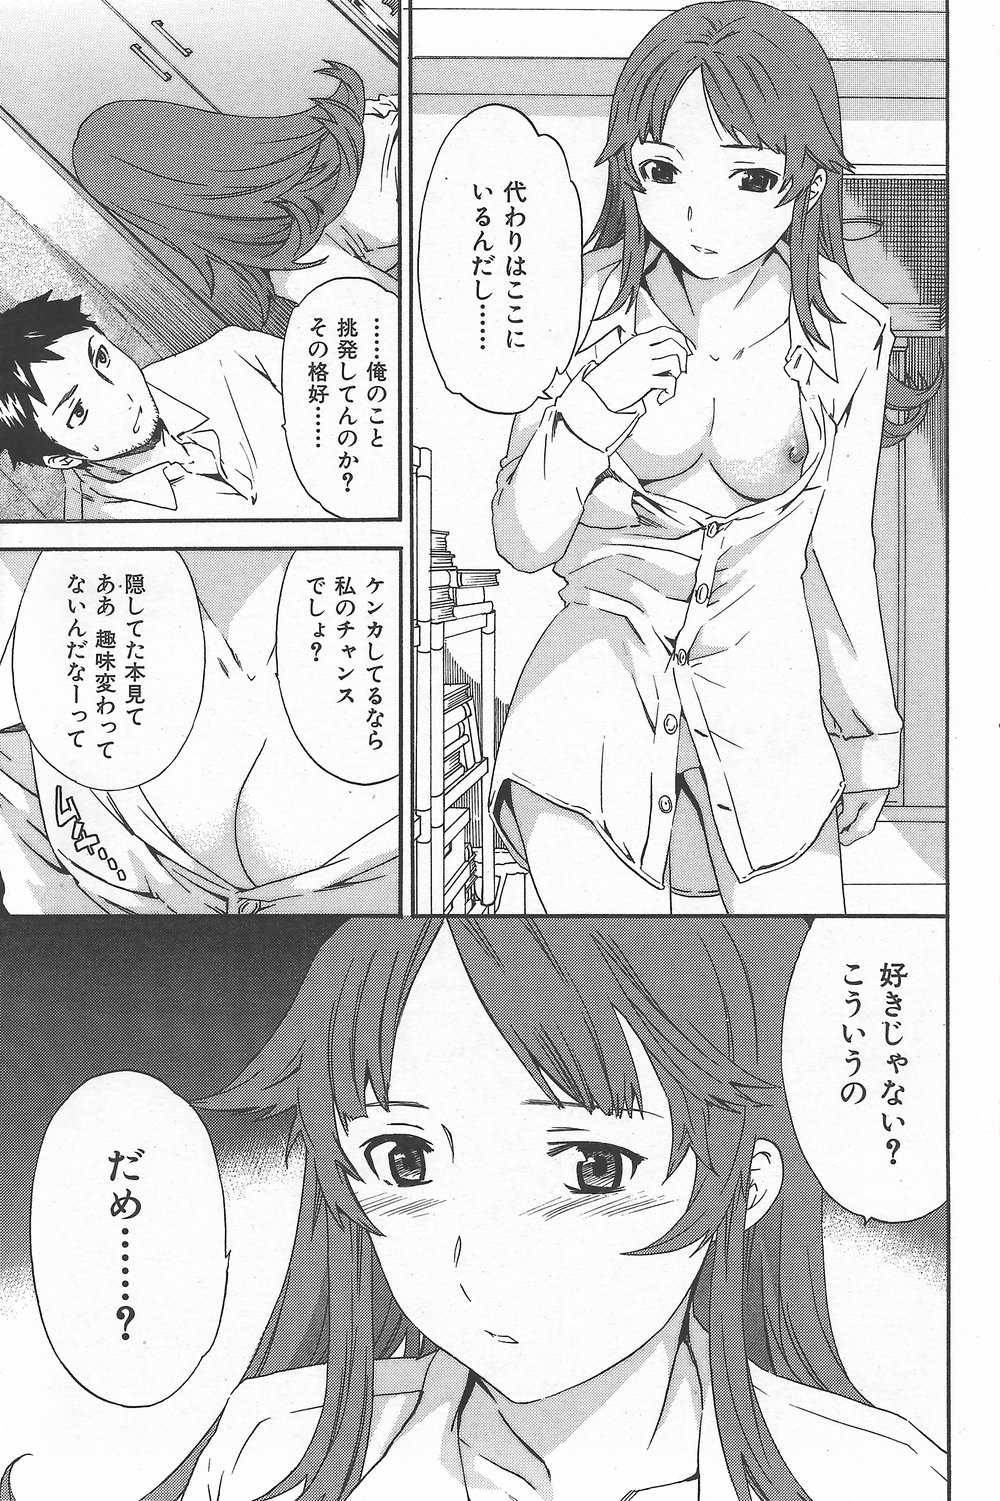 [H-Magazine] Comic Kairakuten Beast - Vol.024 [2007-10] 